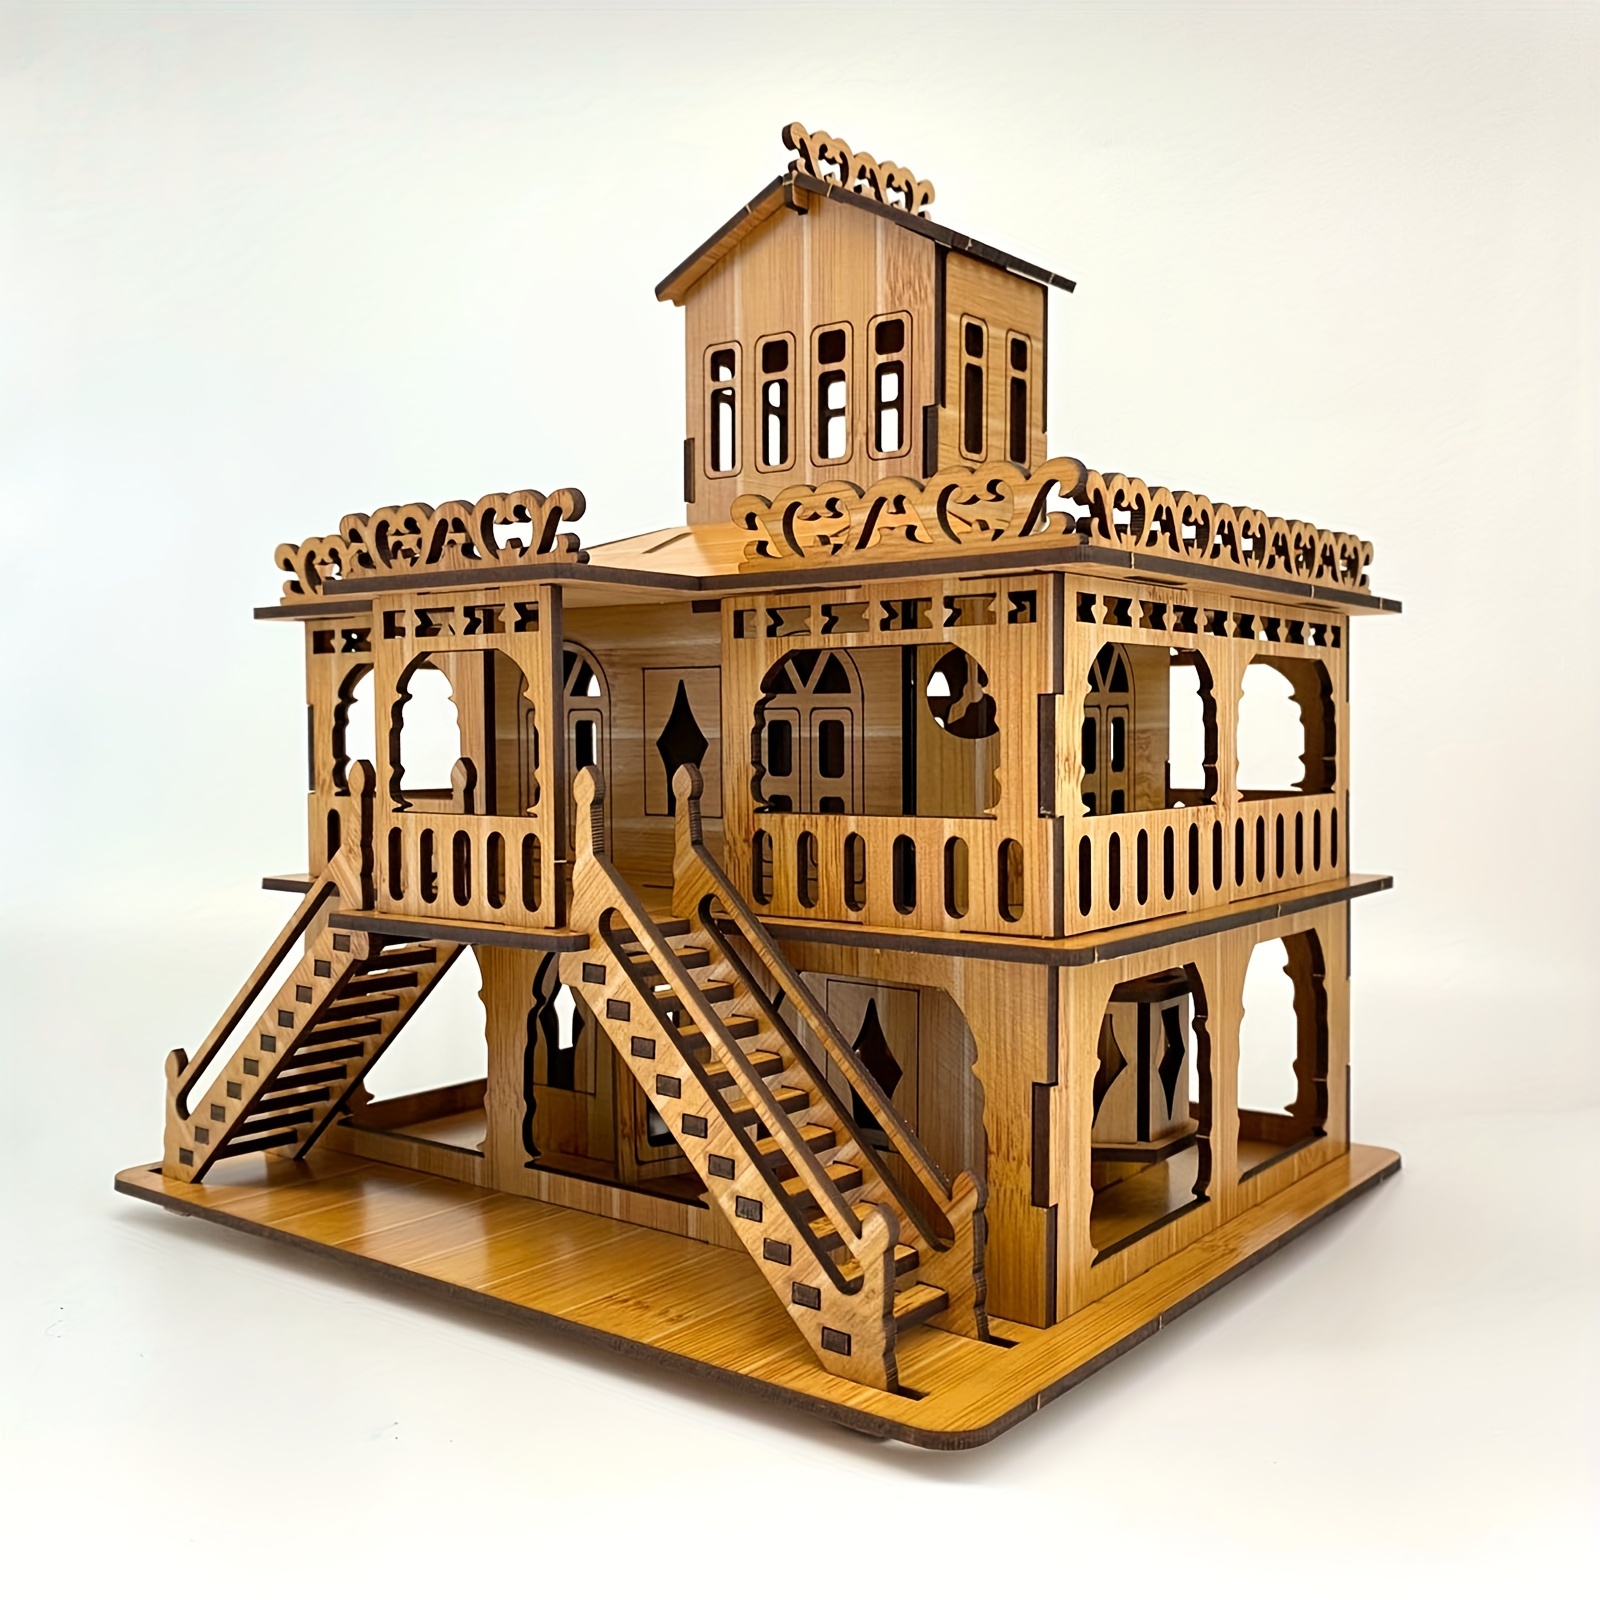 Puzzle 3D in legno per ragazzi e adulti amanti dei modellini e ingranaggi